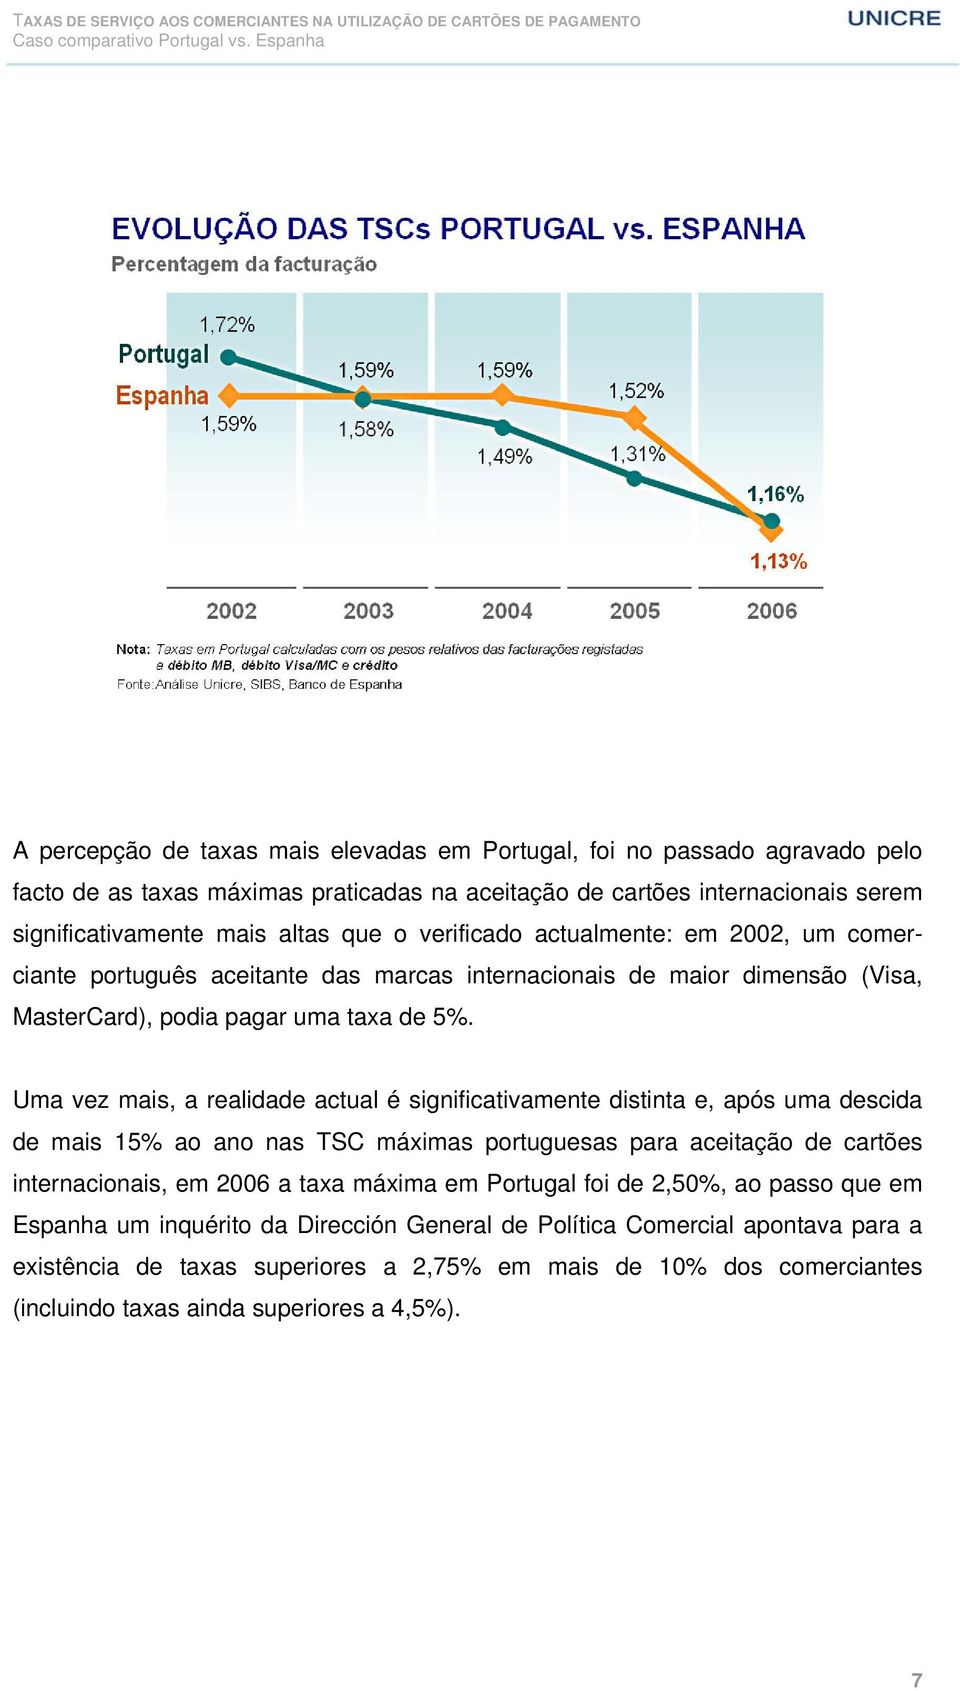 Uma vez mais, a realidade actual é significativamente distinta e, após uma descida de mais 15% ao ano nas TSC máximas portuguesas para aceitação de cartões internacionais, em 2006 a taxa máxima em